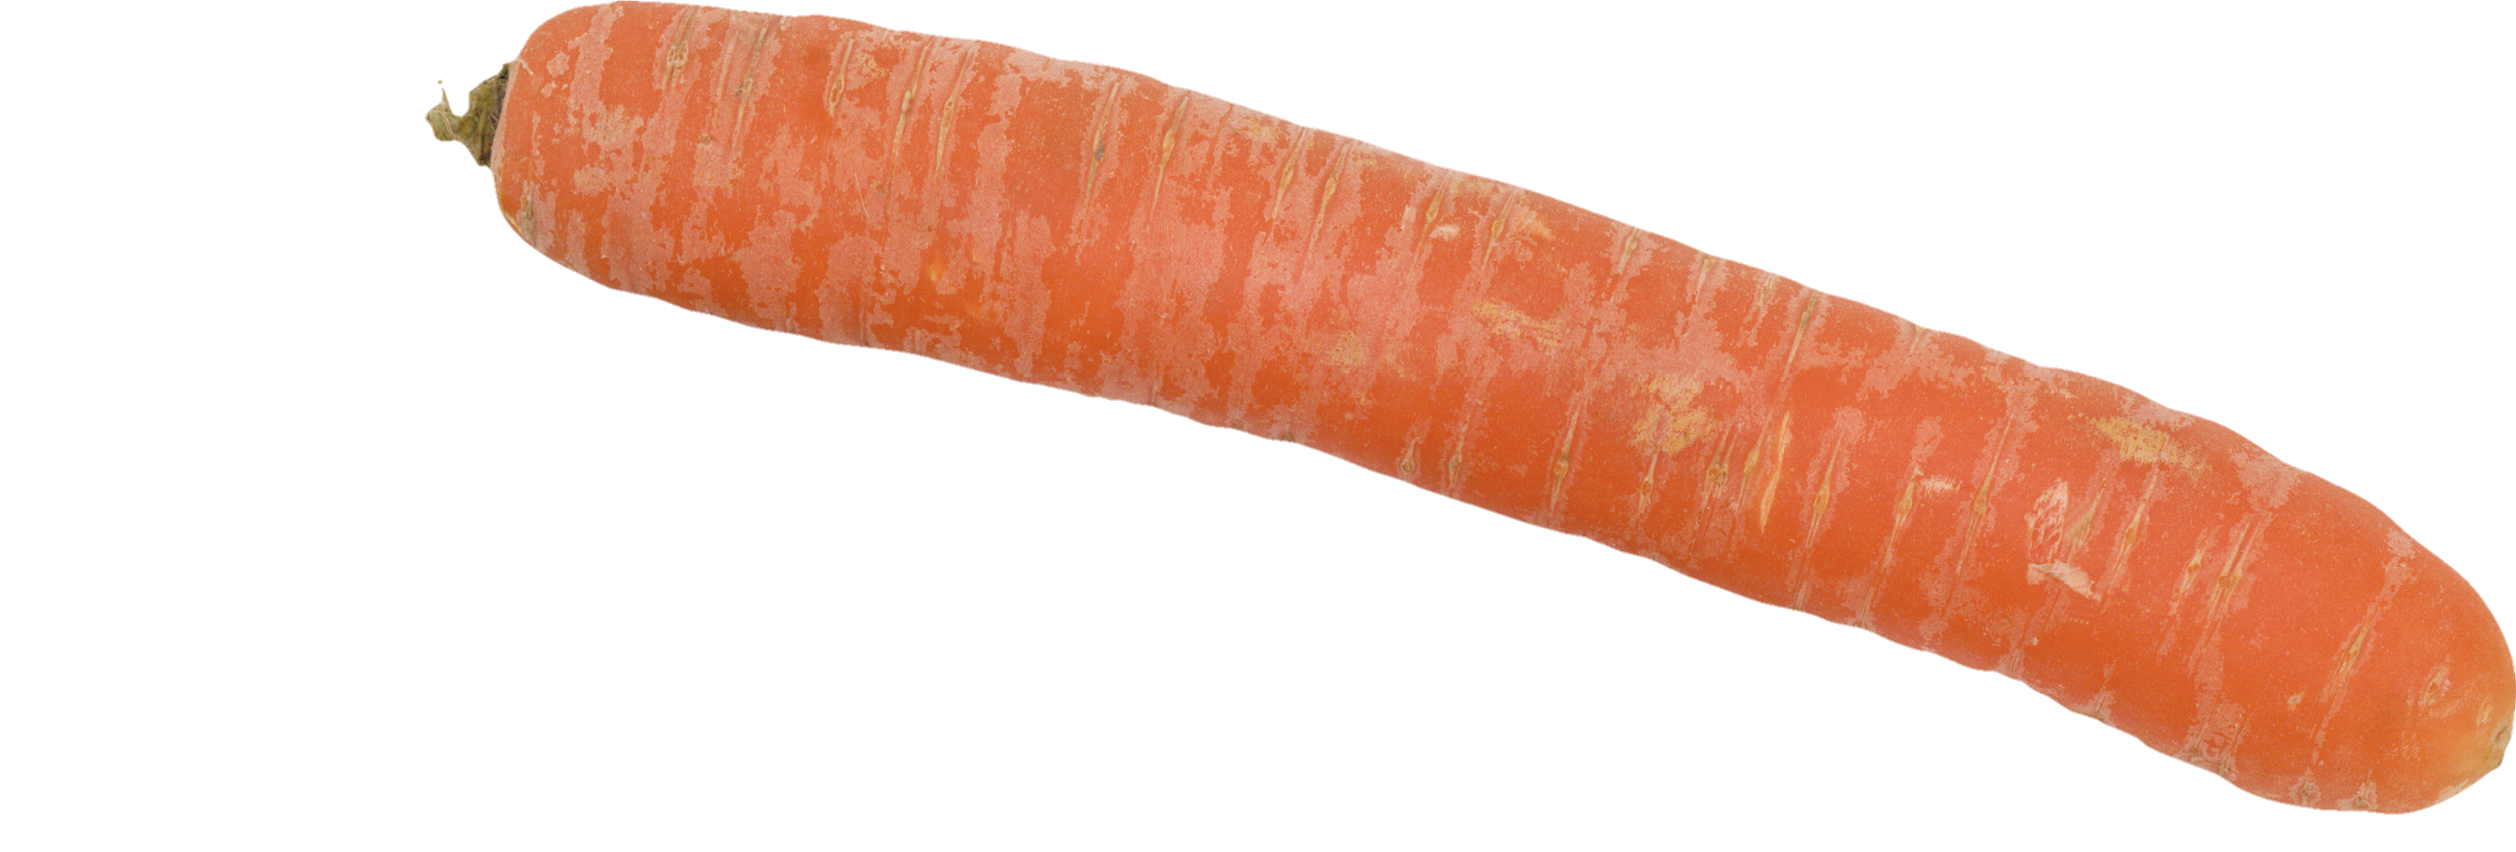 Carrot-18